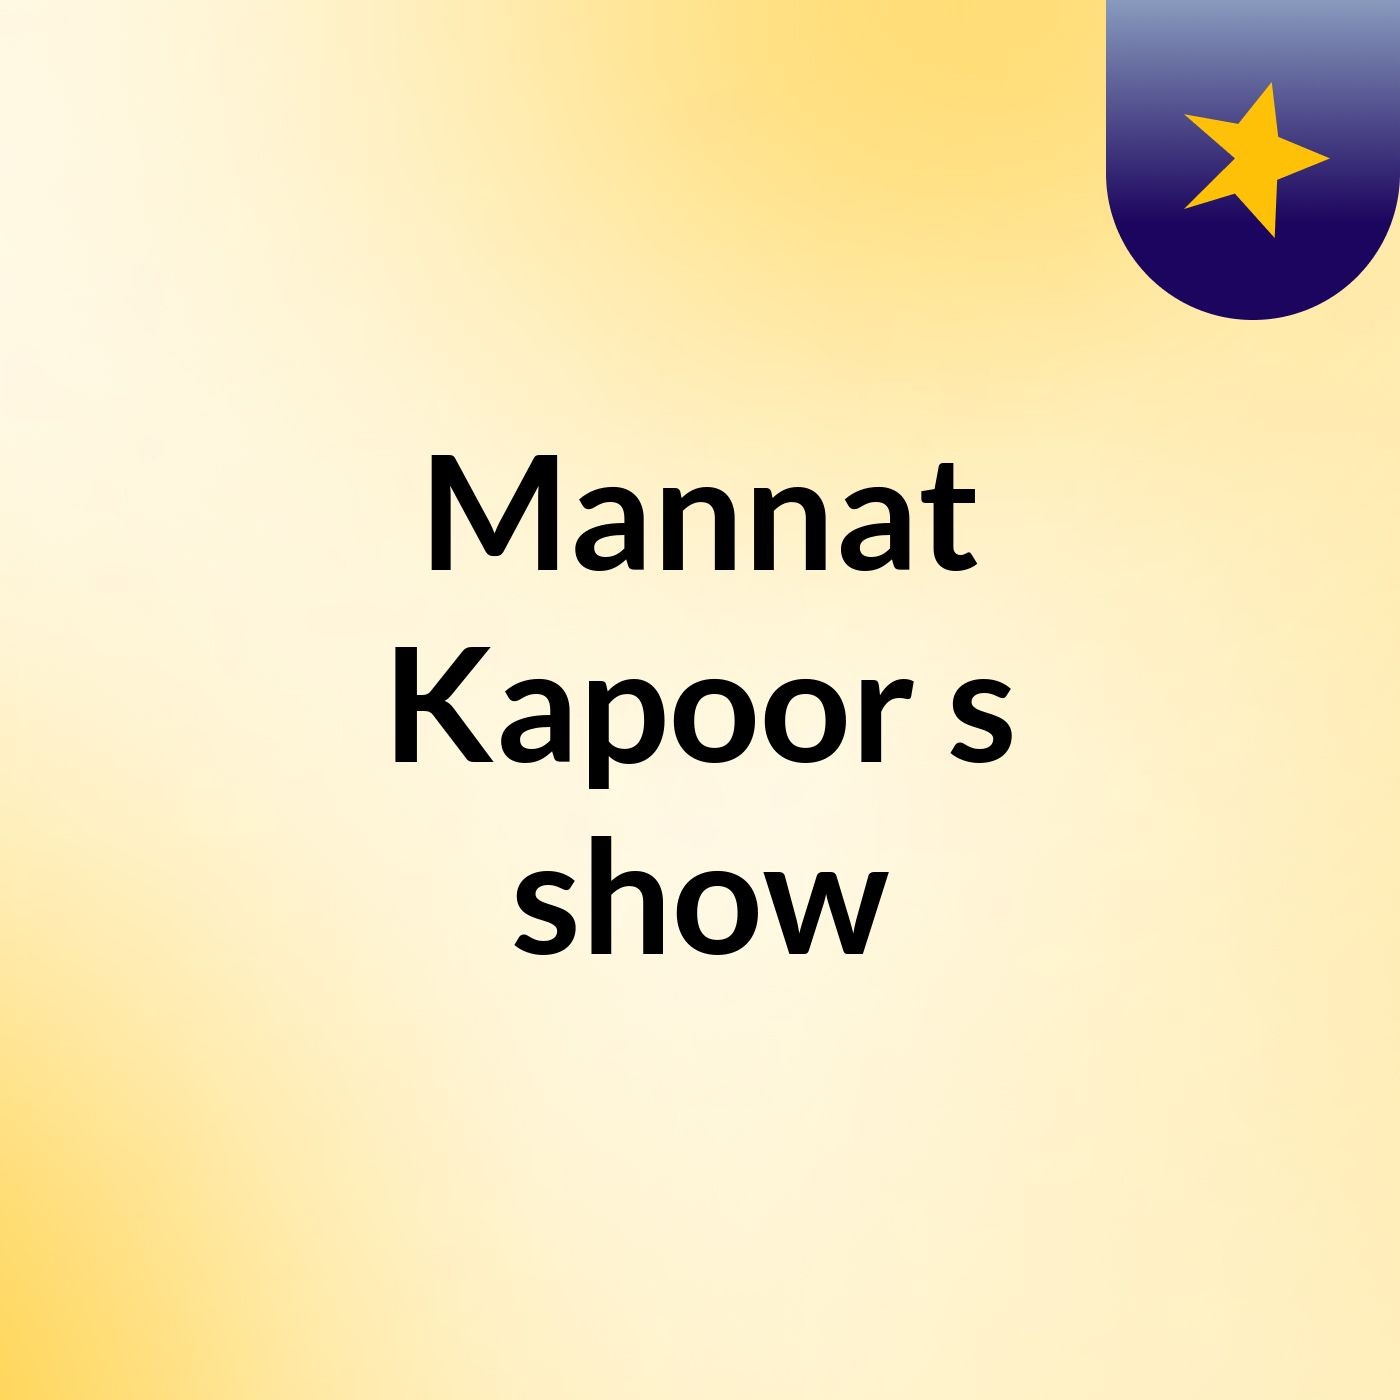 Mannat Kapoor's show